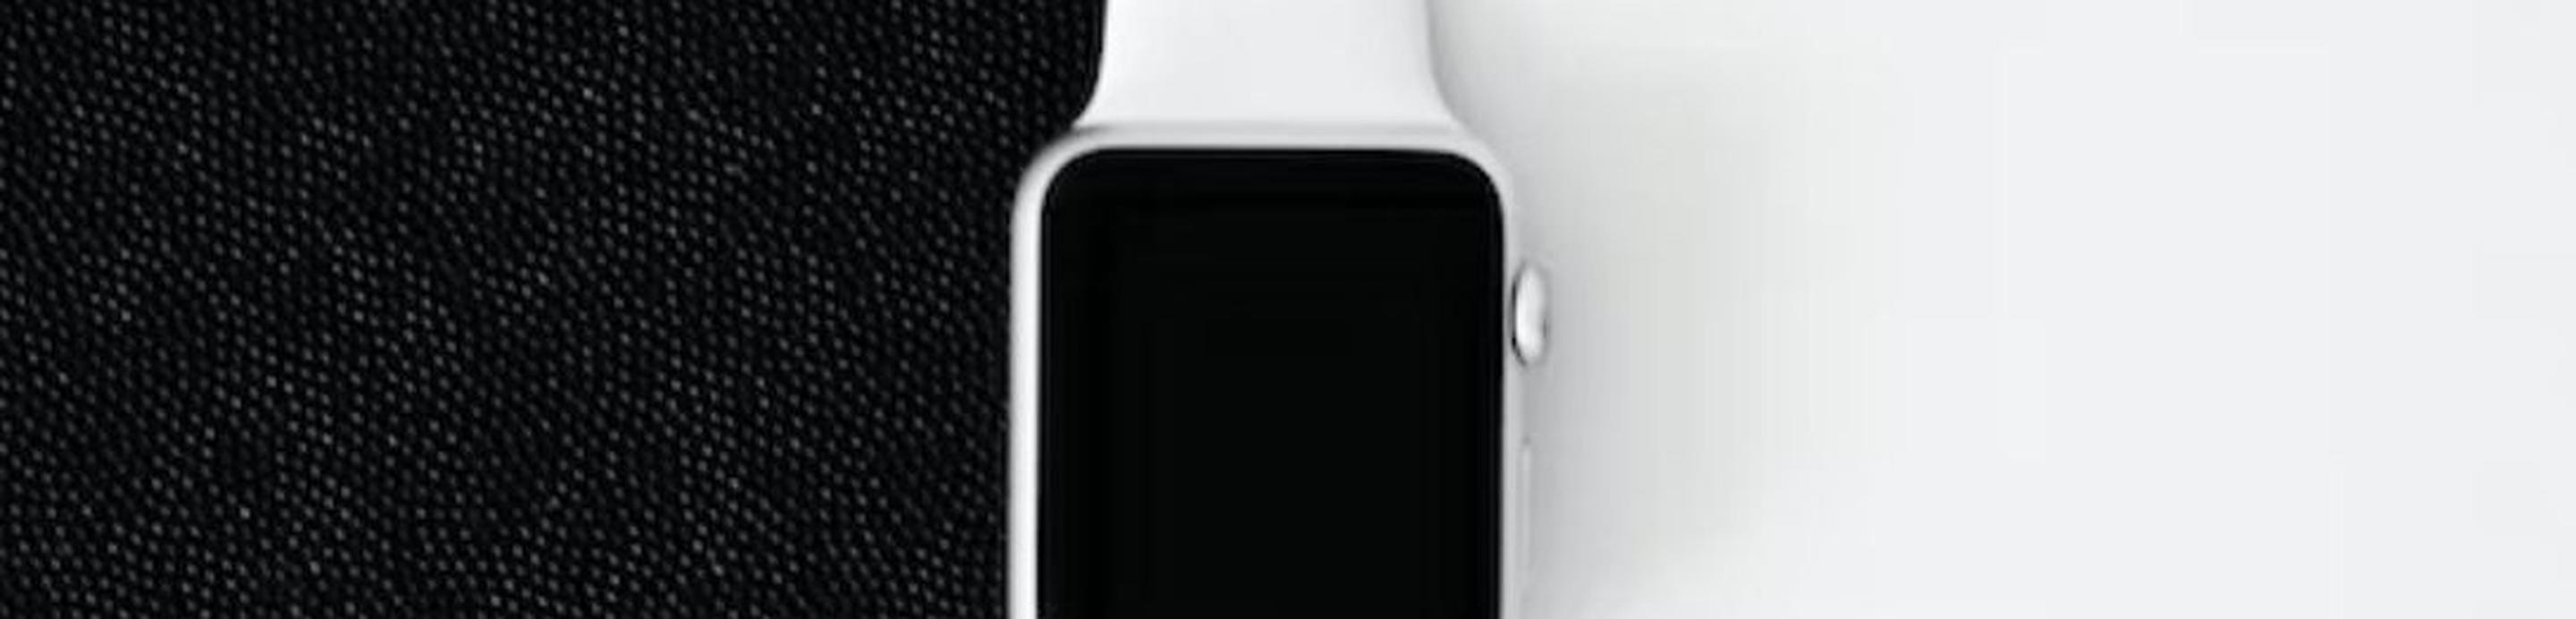 Apple Watch 6とApple Watch 8の違い